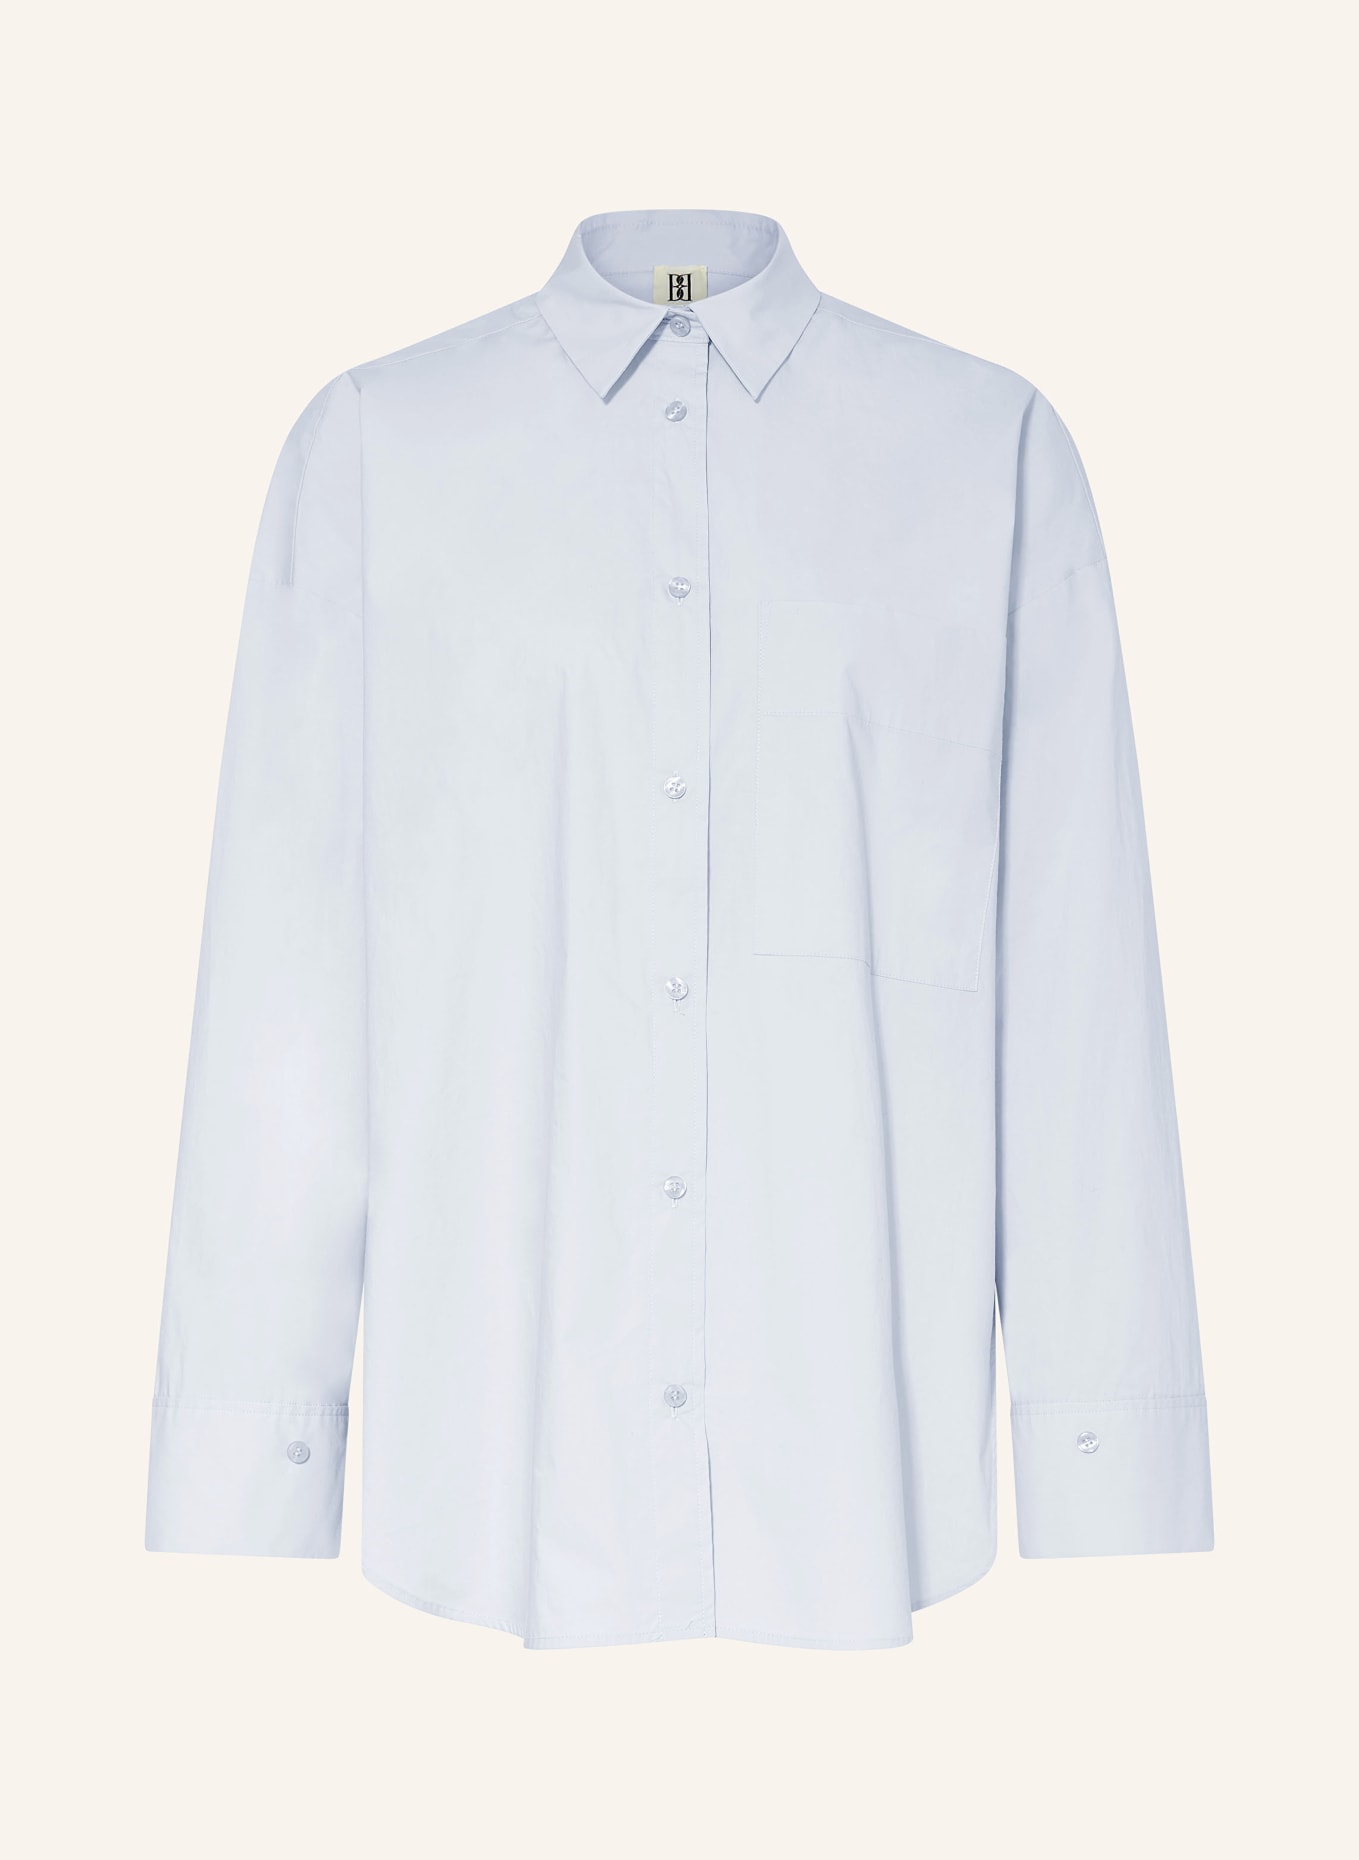 BY MALENE BIRGER Shirt blouse DERRIS, Color: LIGHT BLUE (Image 1)